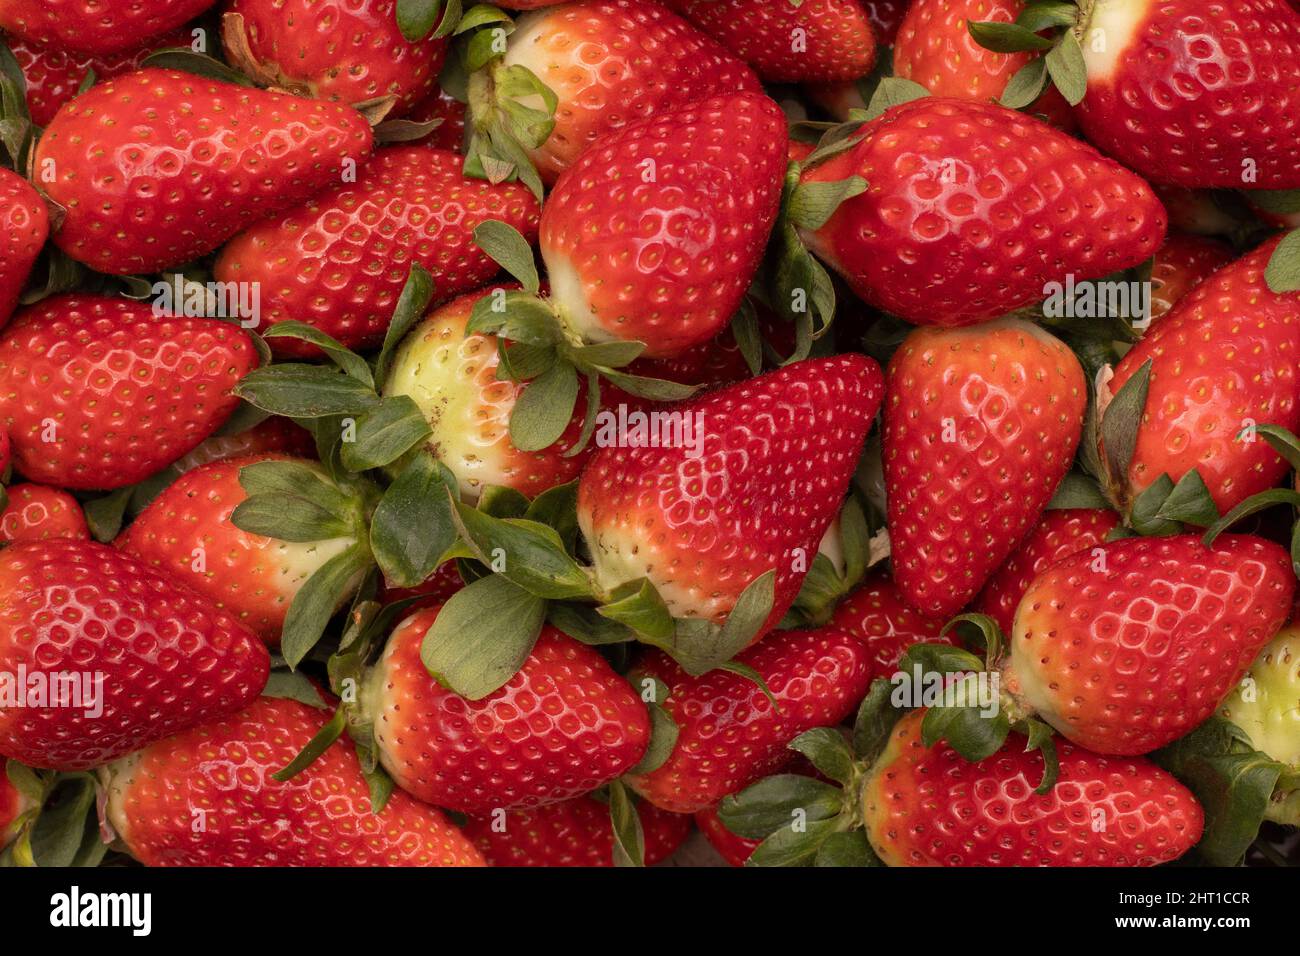 Quelques fraises délicieuses en arrière-plan, fraîchement cueillies. Une des récoltes les plus importantes est produite dans la province de Huelva, en Espagne. Banque D'Images